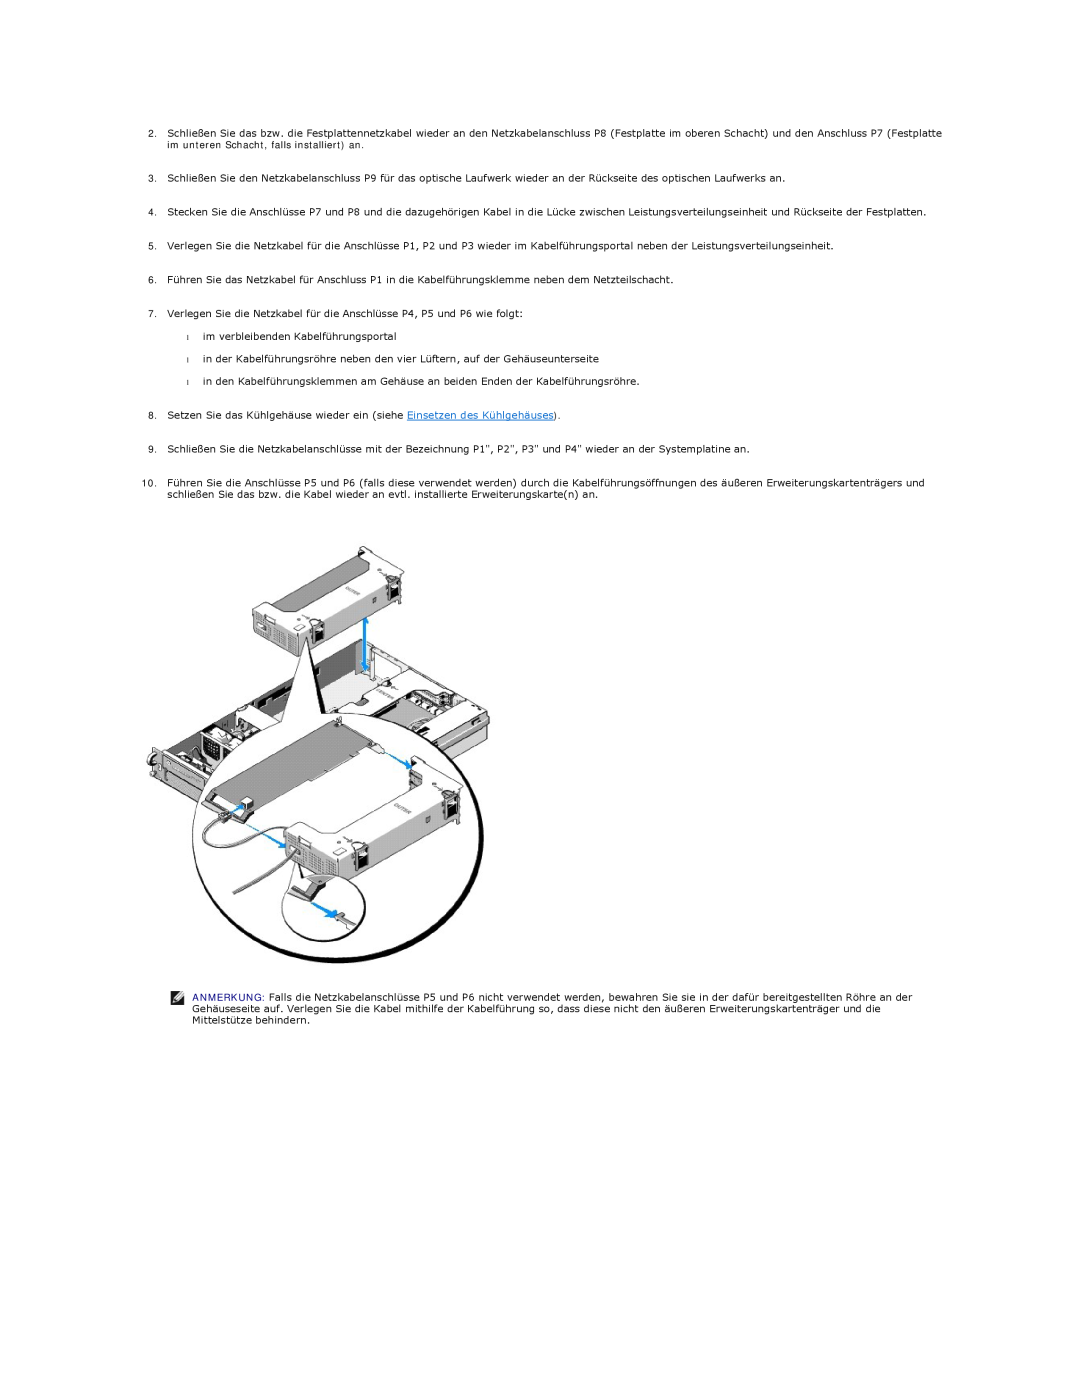 Dell 5400 manual im verbleibenden Kabelführungsportal 